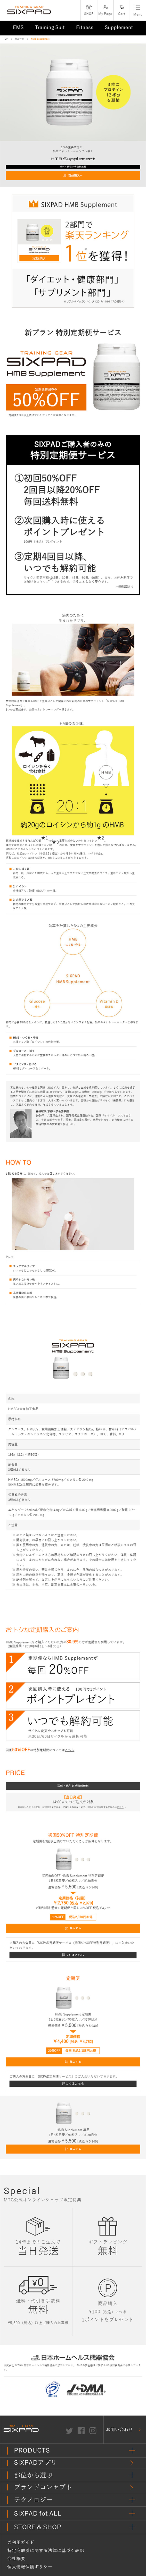 SIXPAD HMB Supplement_sp_1